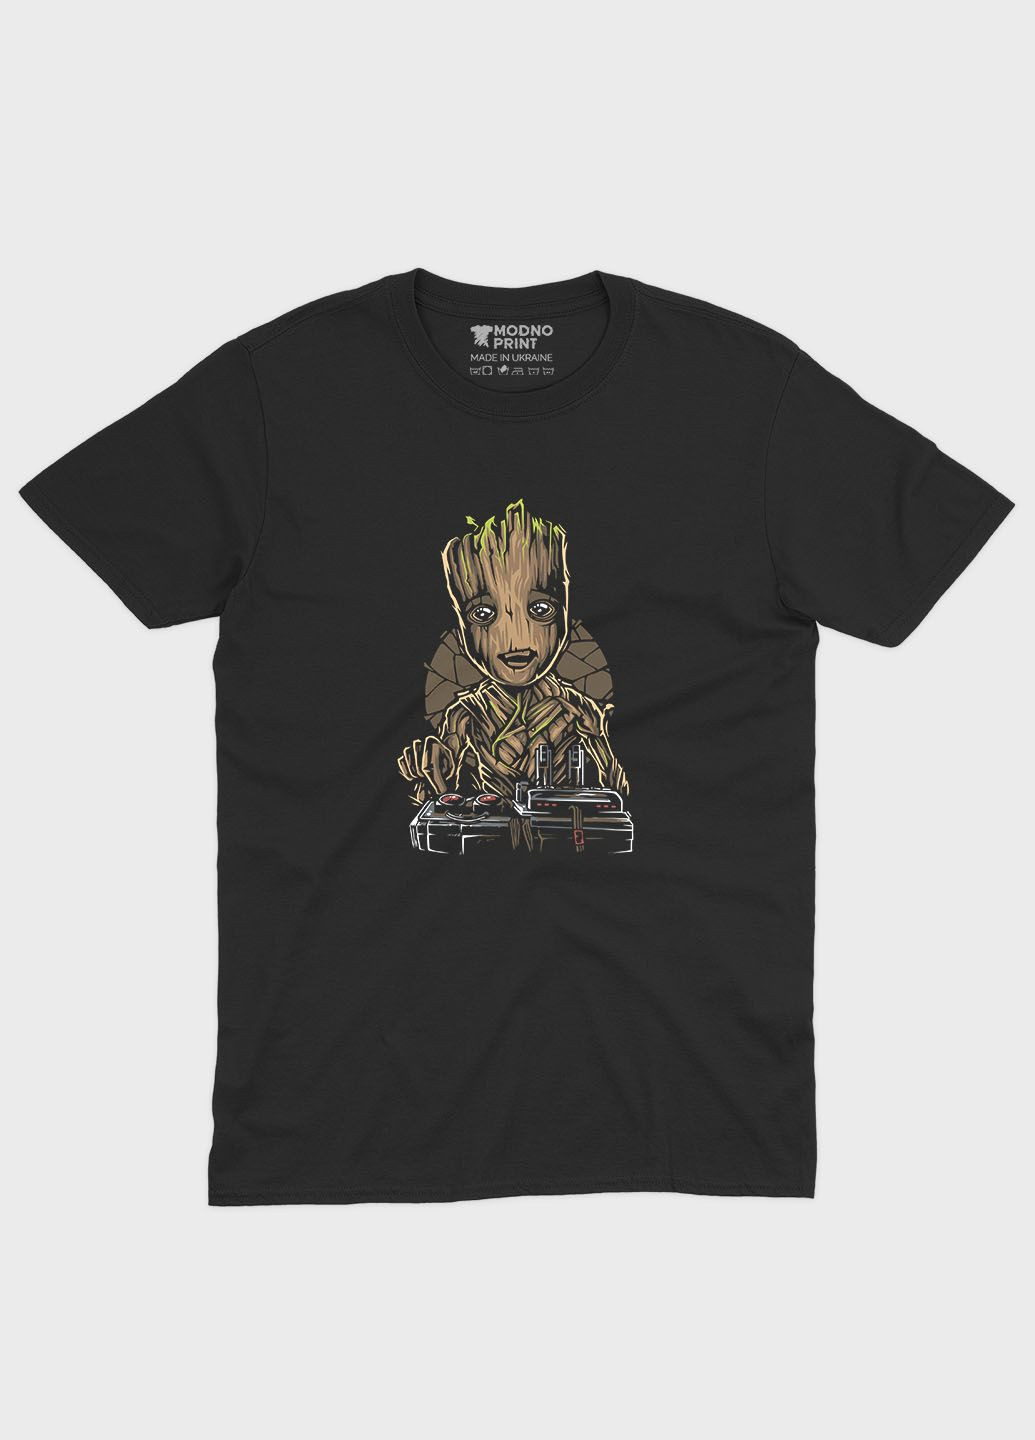 Черная демисезонная футболка для мальчика с принтом супергероев - стражи галактики (ts001-1-bl-006-017-014-b) Modno